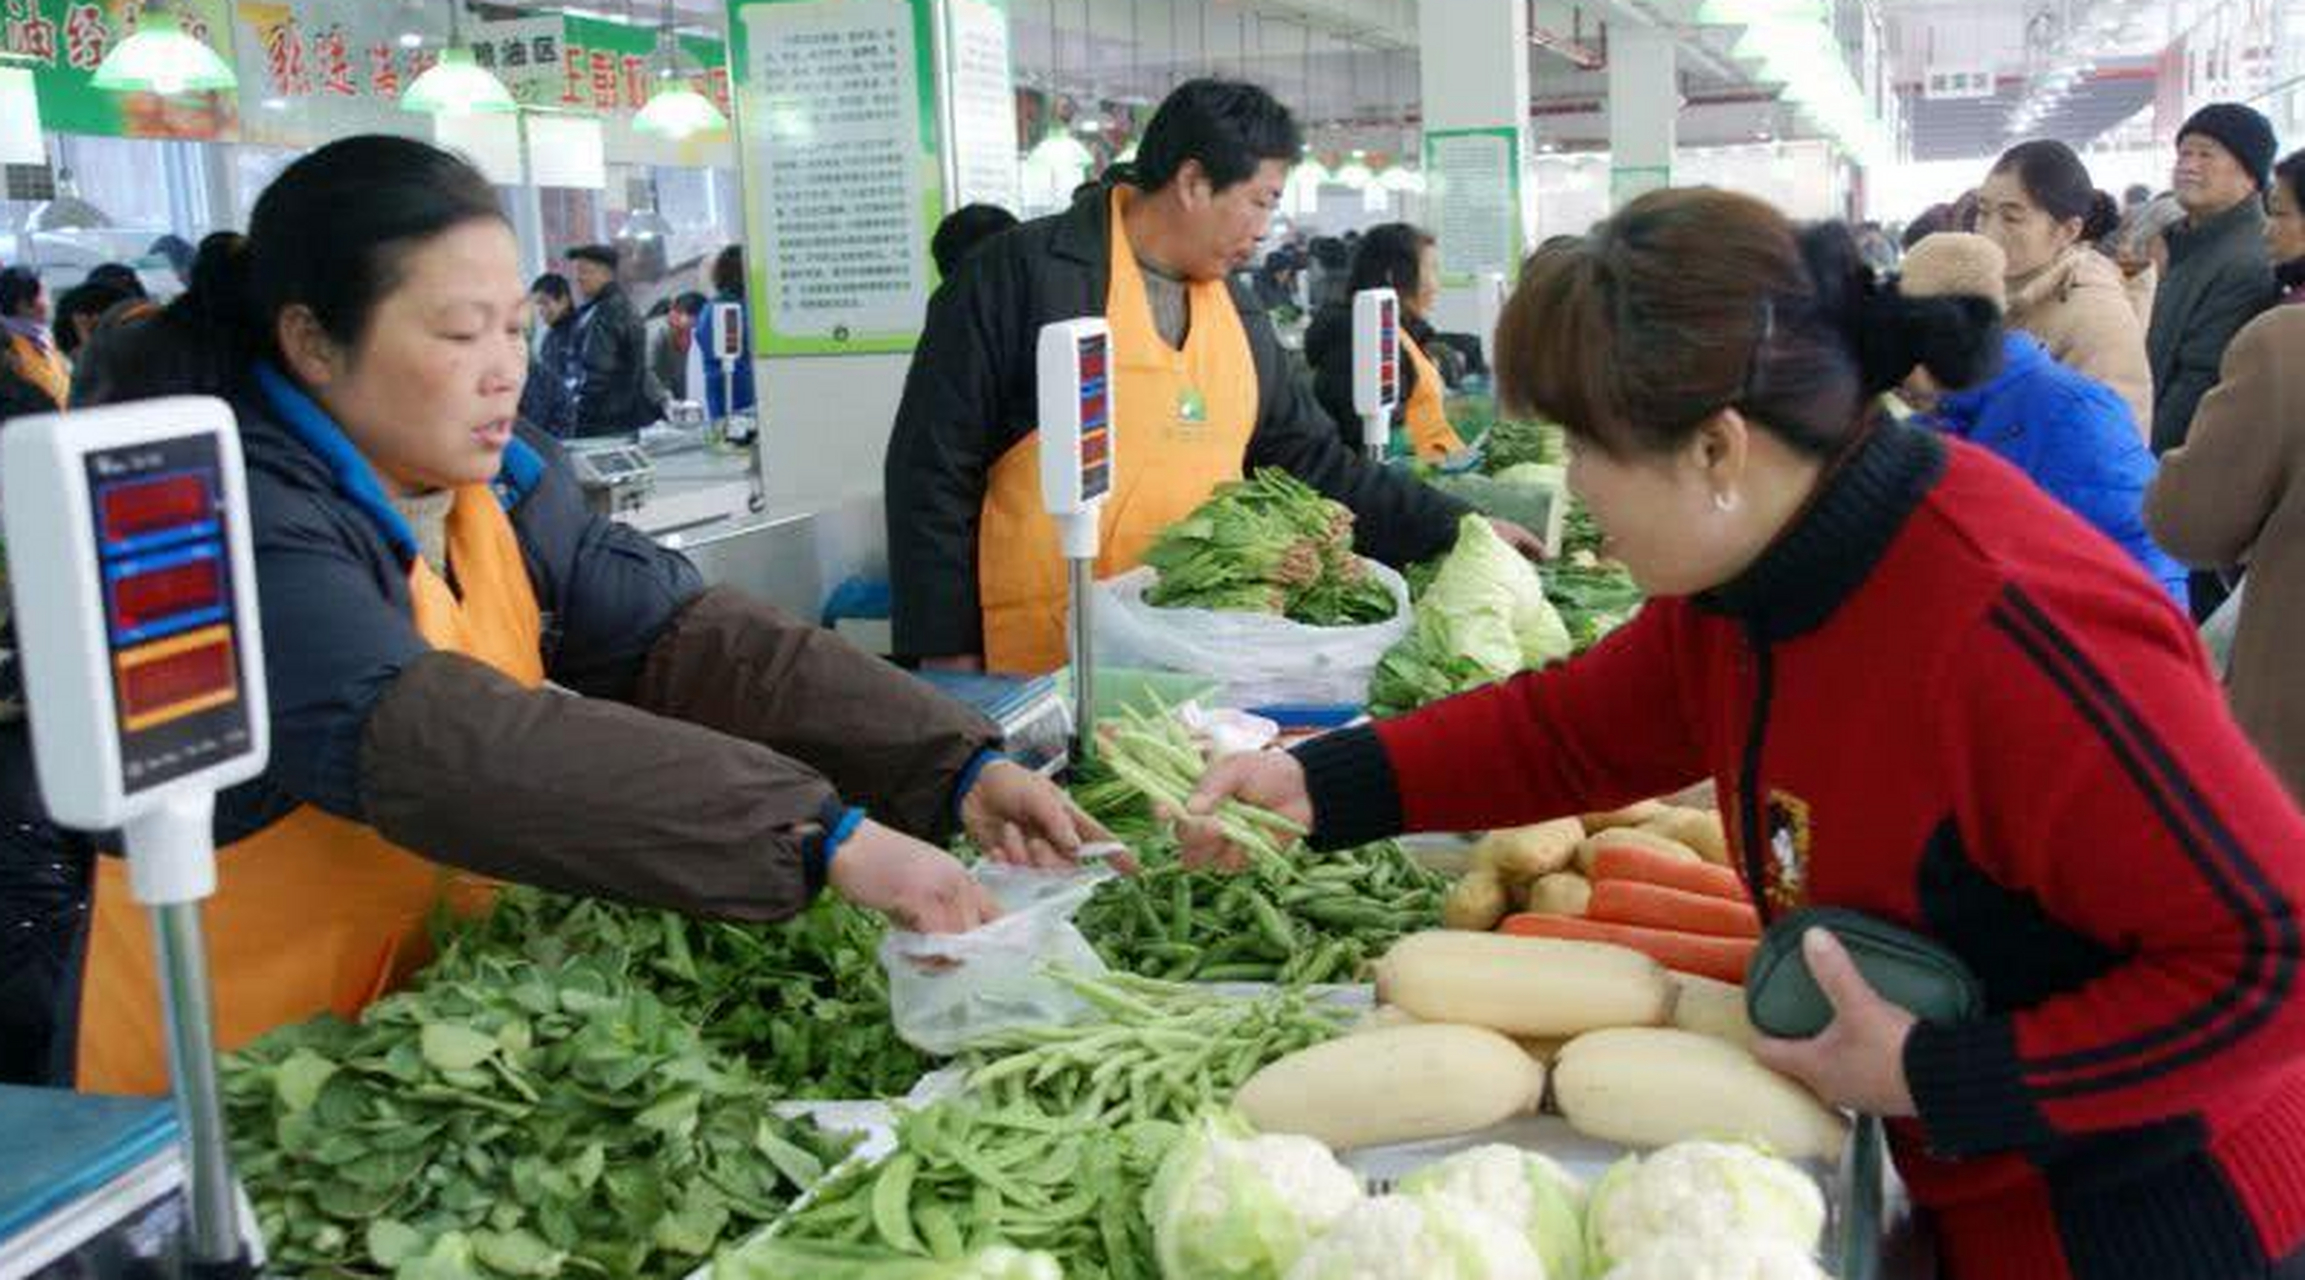 贵州贵阳的吴大哥在农贸市场卖小菜,一年下来就赚到了110万,亲戚朋友